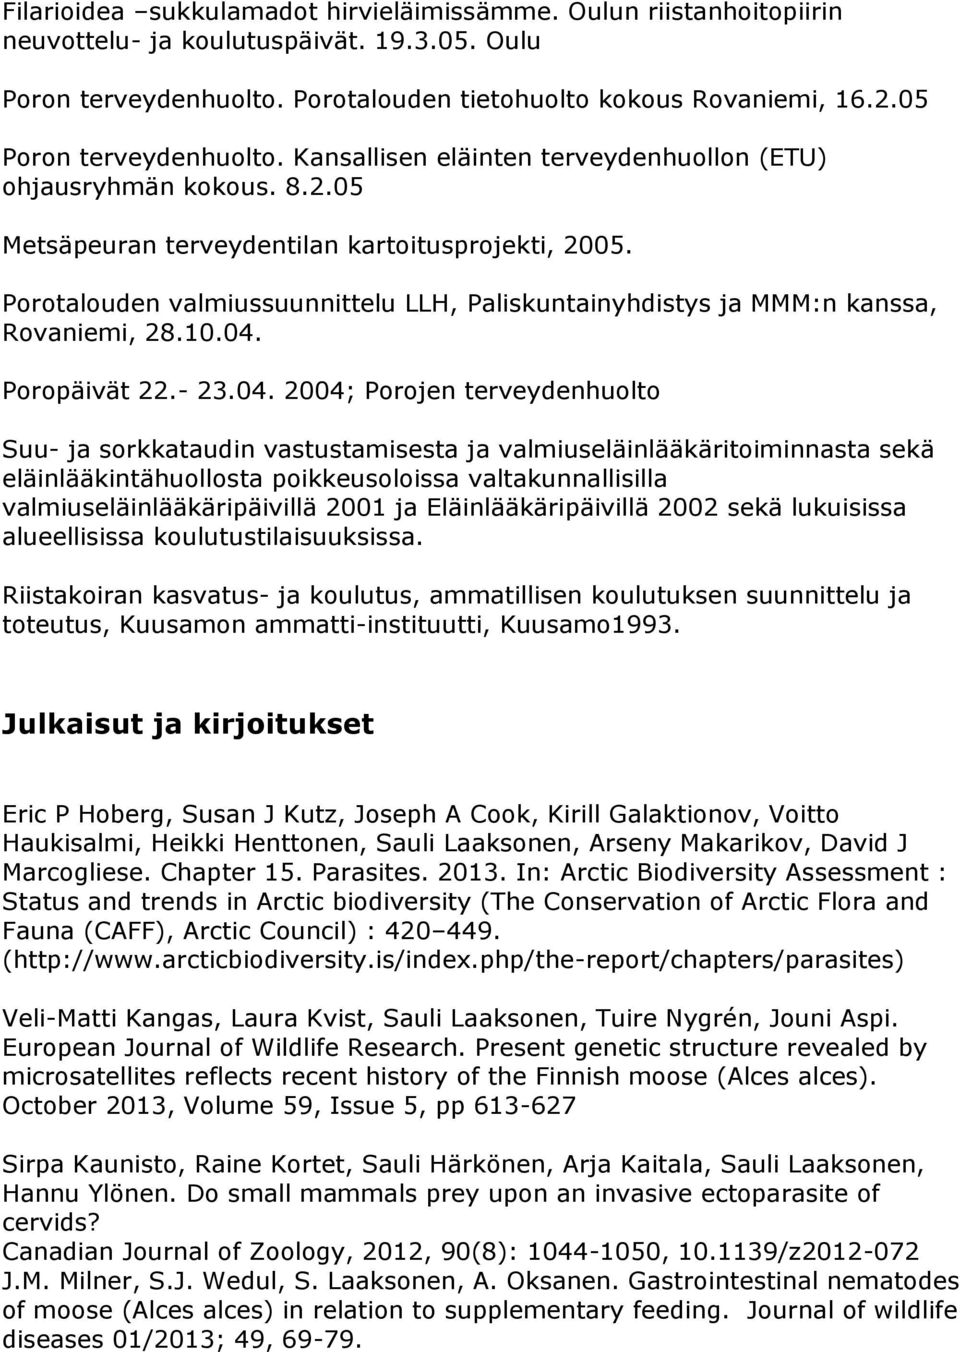 Porotalouden valmiussuunnittelu LLH, Paliskuntainyhdistys ja MMM:n kanssa, Rovaniemi, 28.10.04.